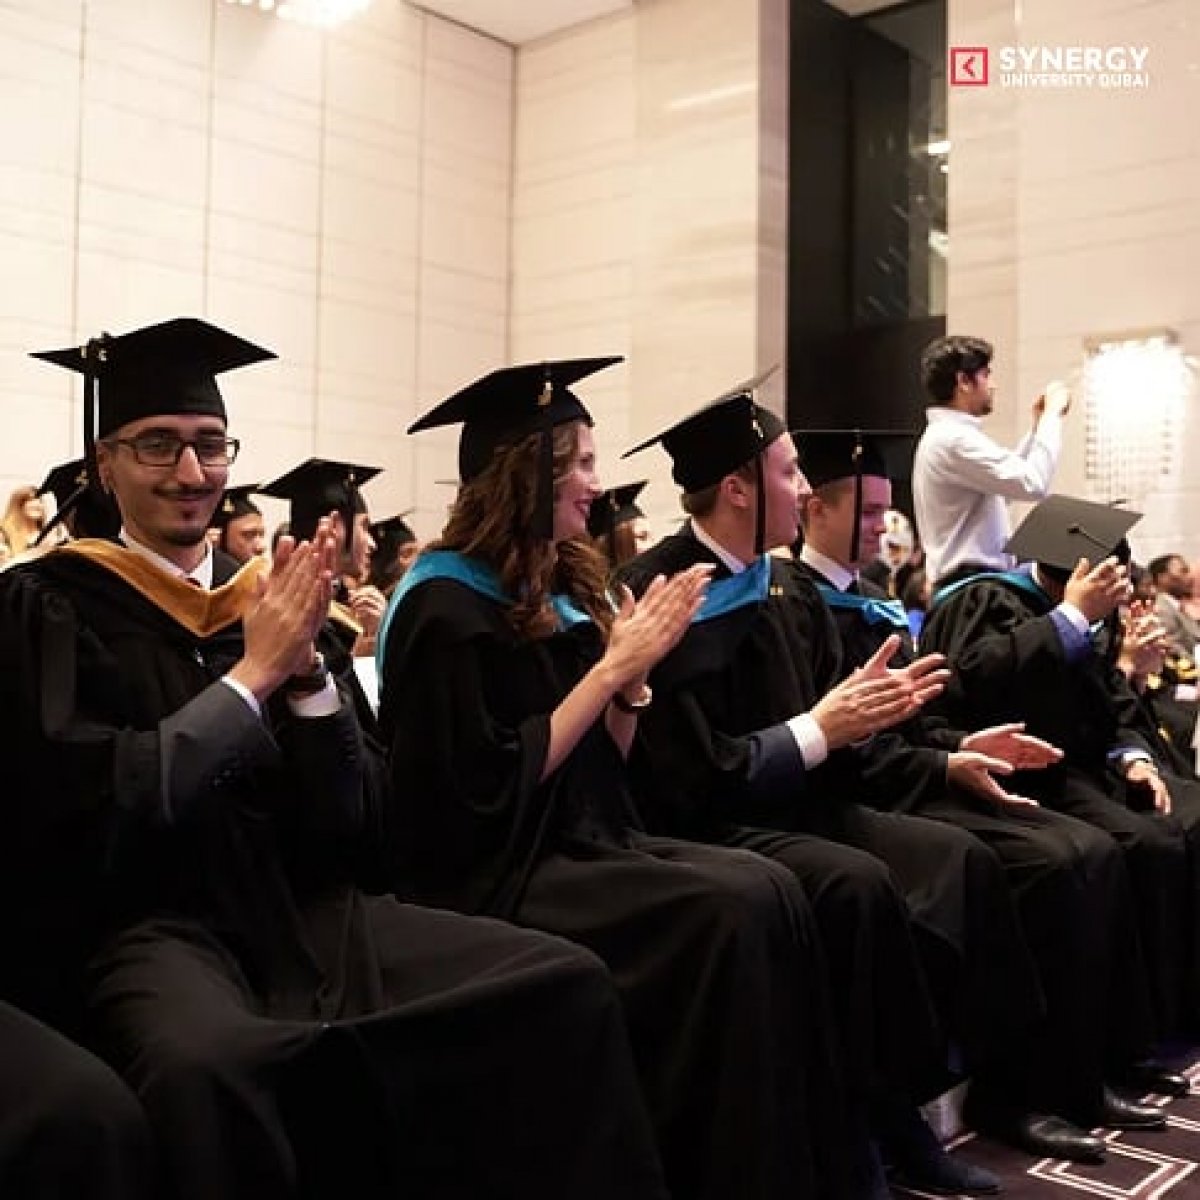 Филиал Университета «Синергия» в Дубае @synergydubai провел торжественную церемонию вручения дипломов и выпускной вечер!